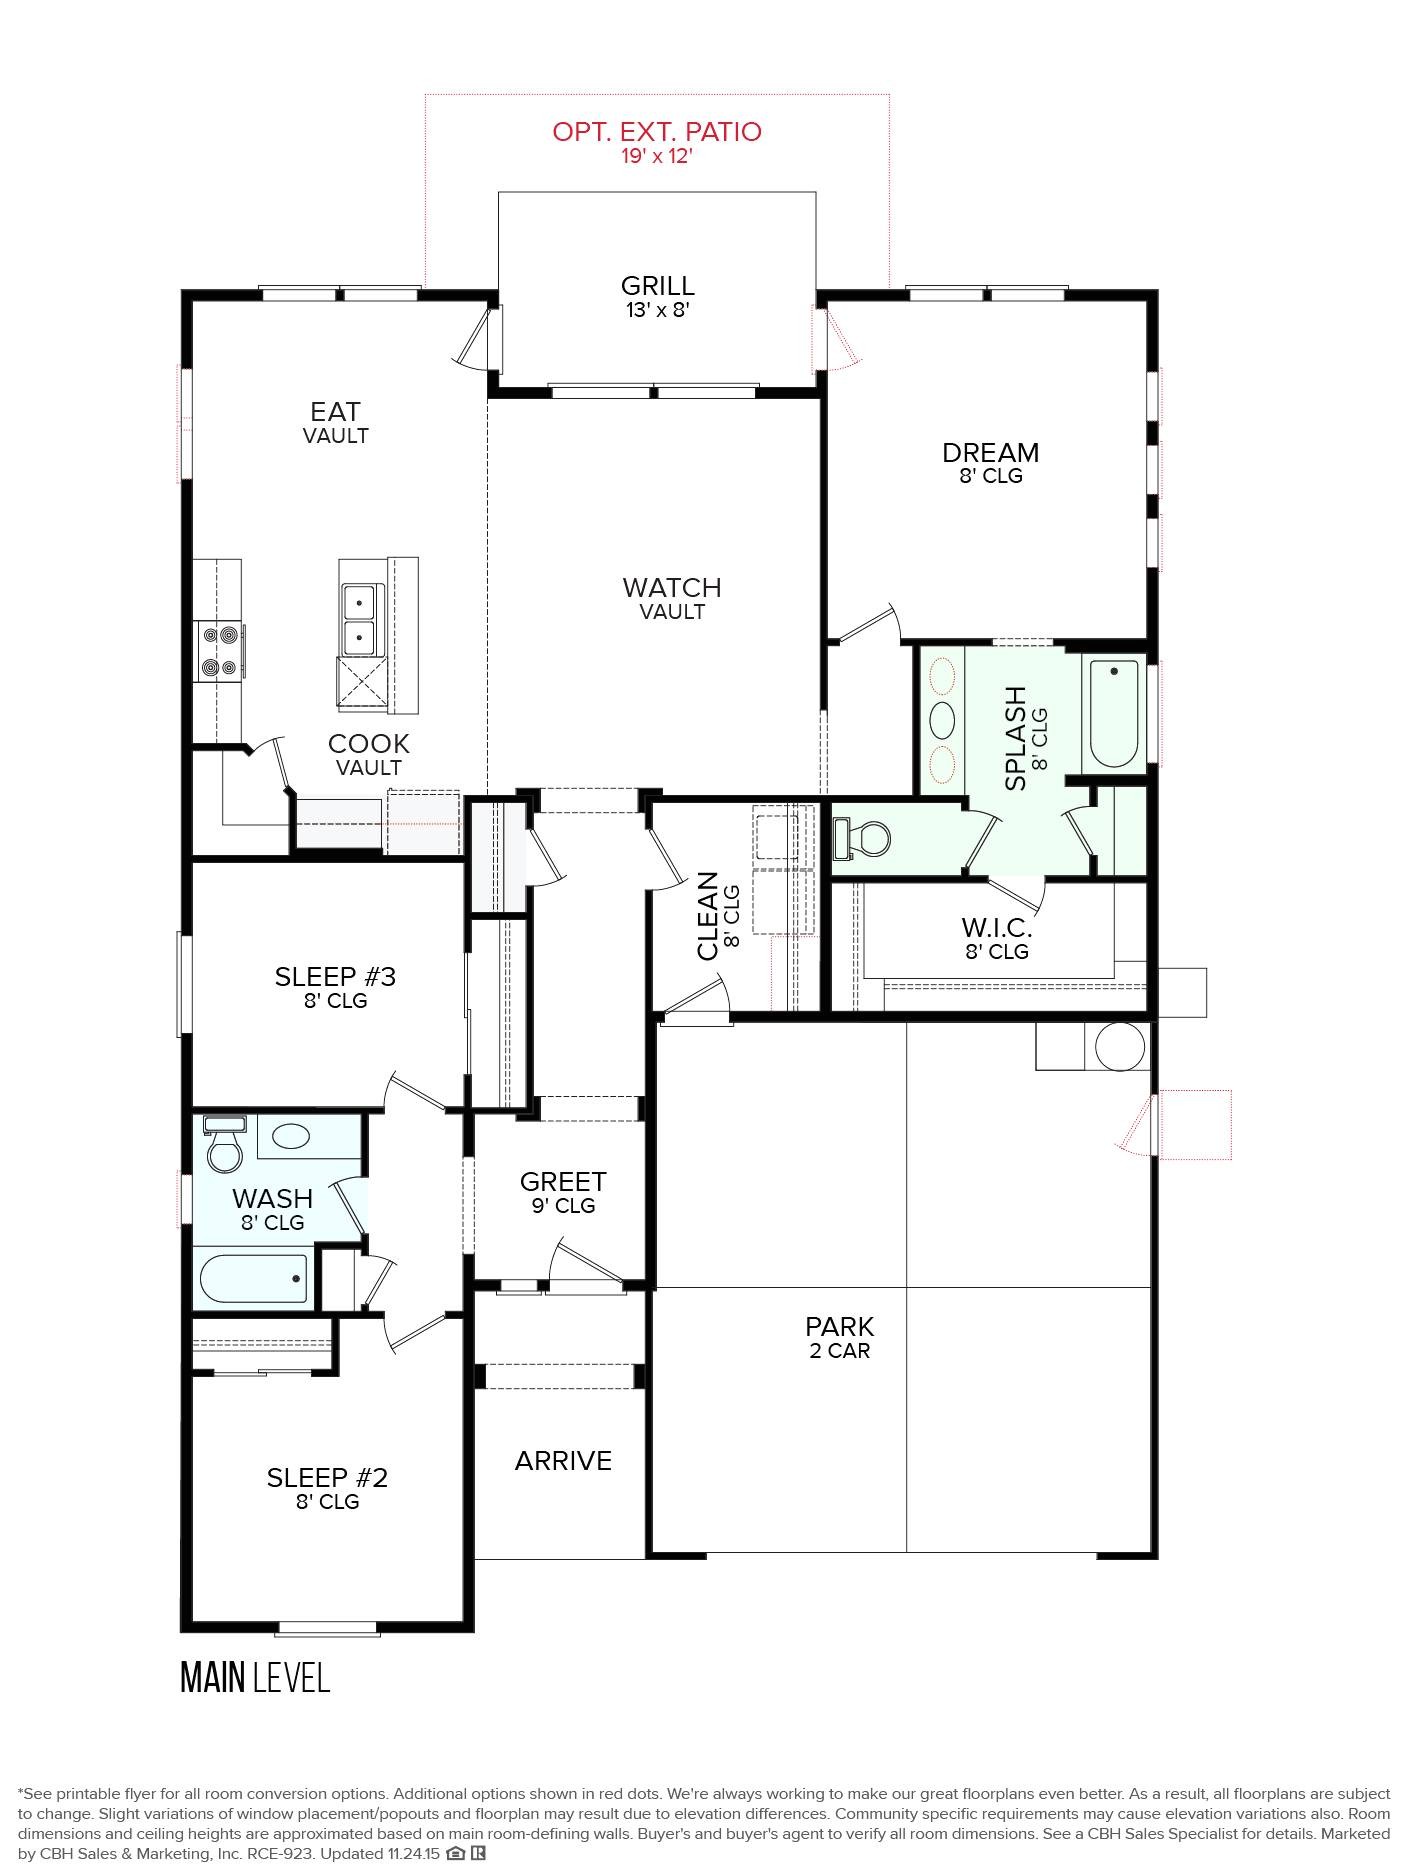 cbh floor plans lovely 20 inspirational garbett homes floor plans